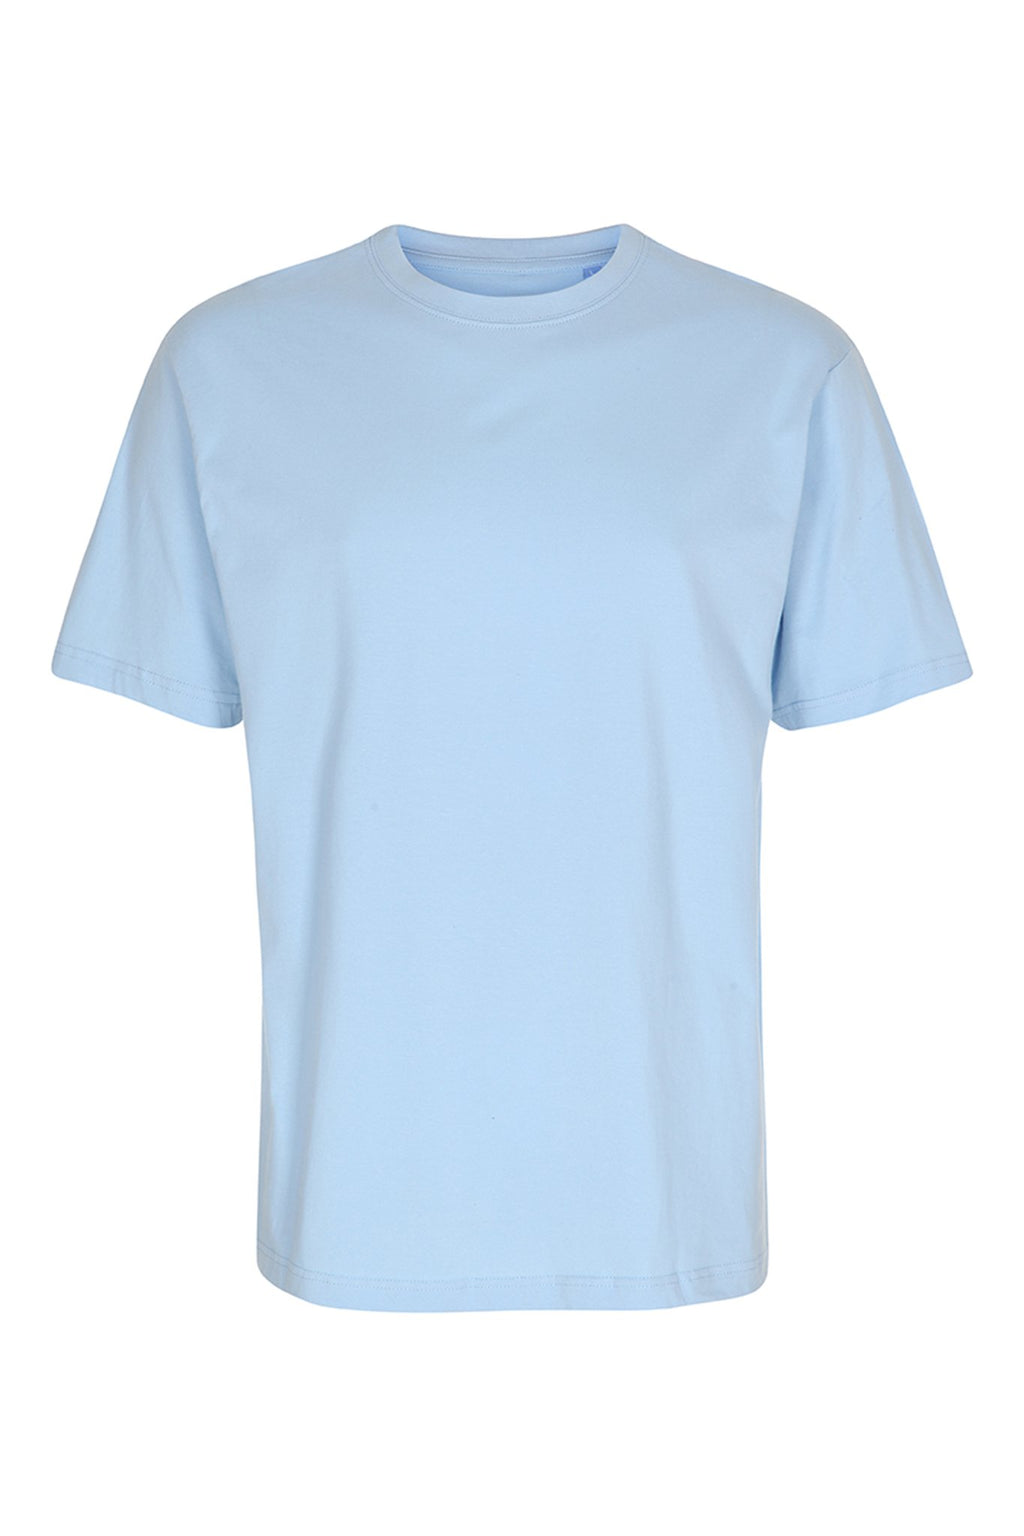 T -shirt per bambini di base - azzurro